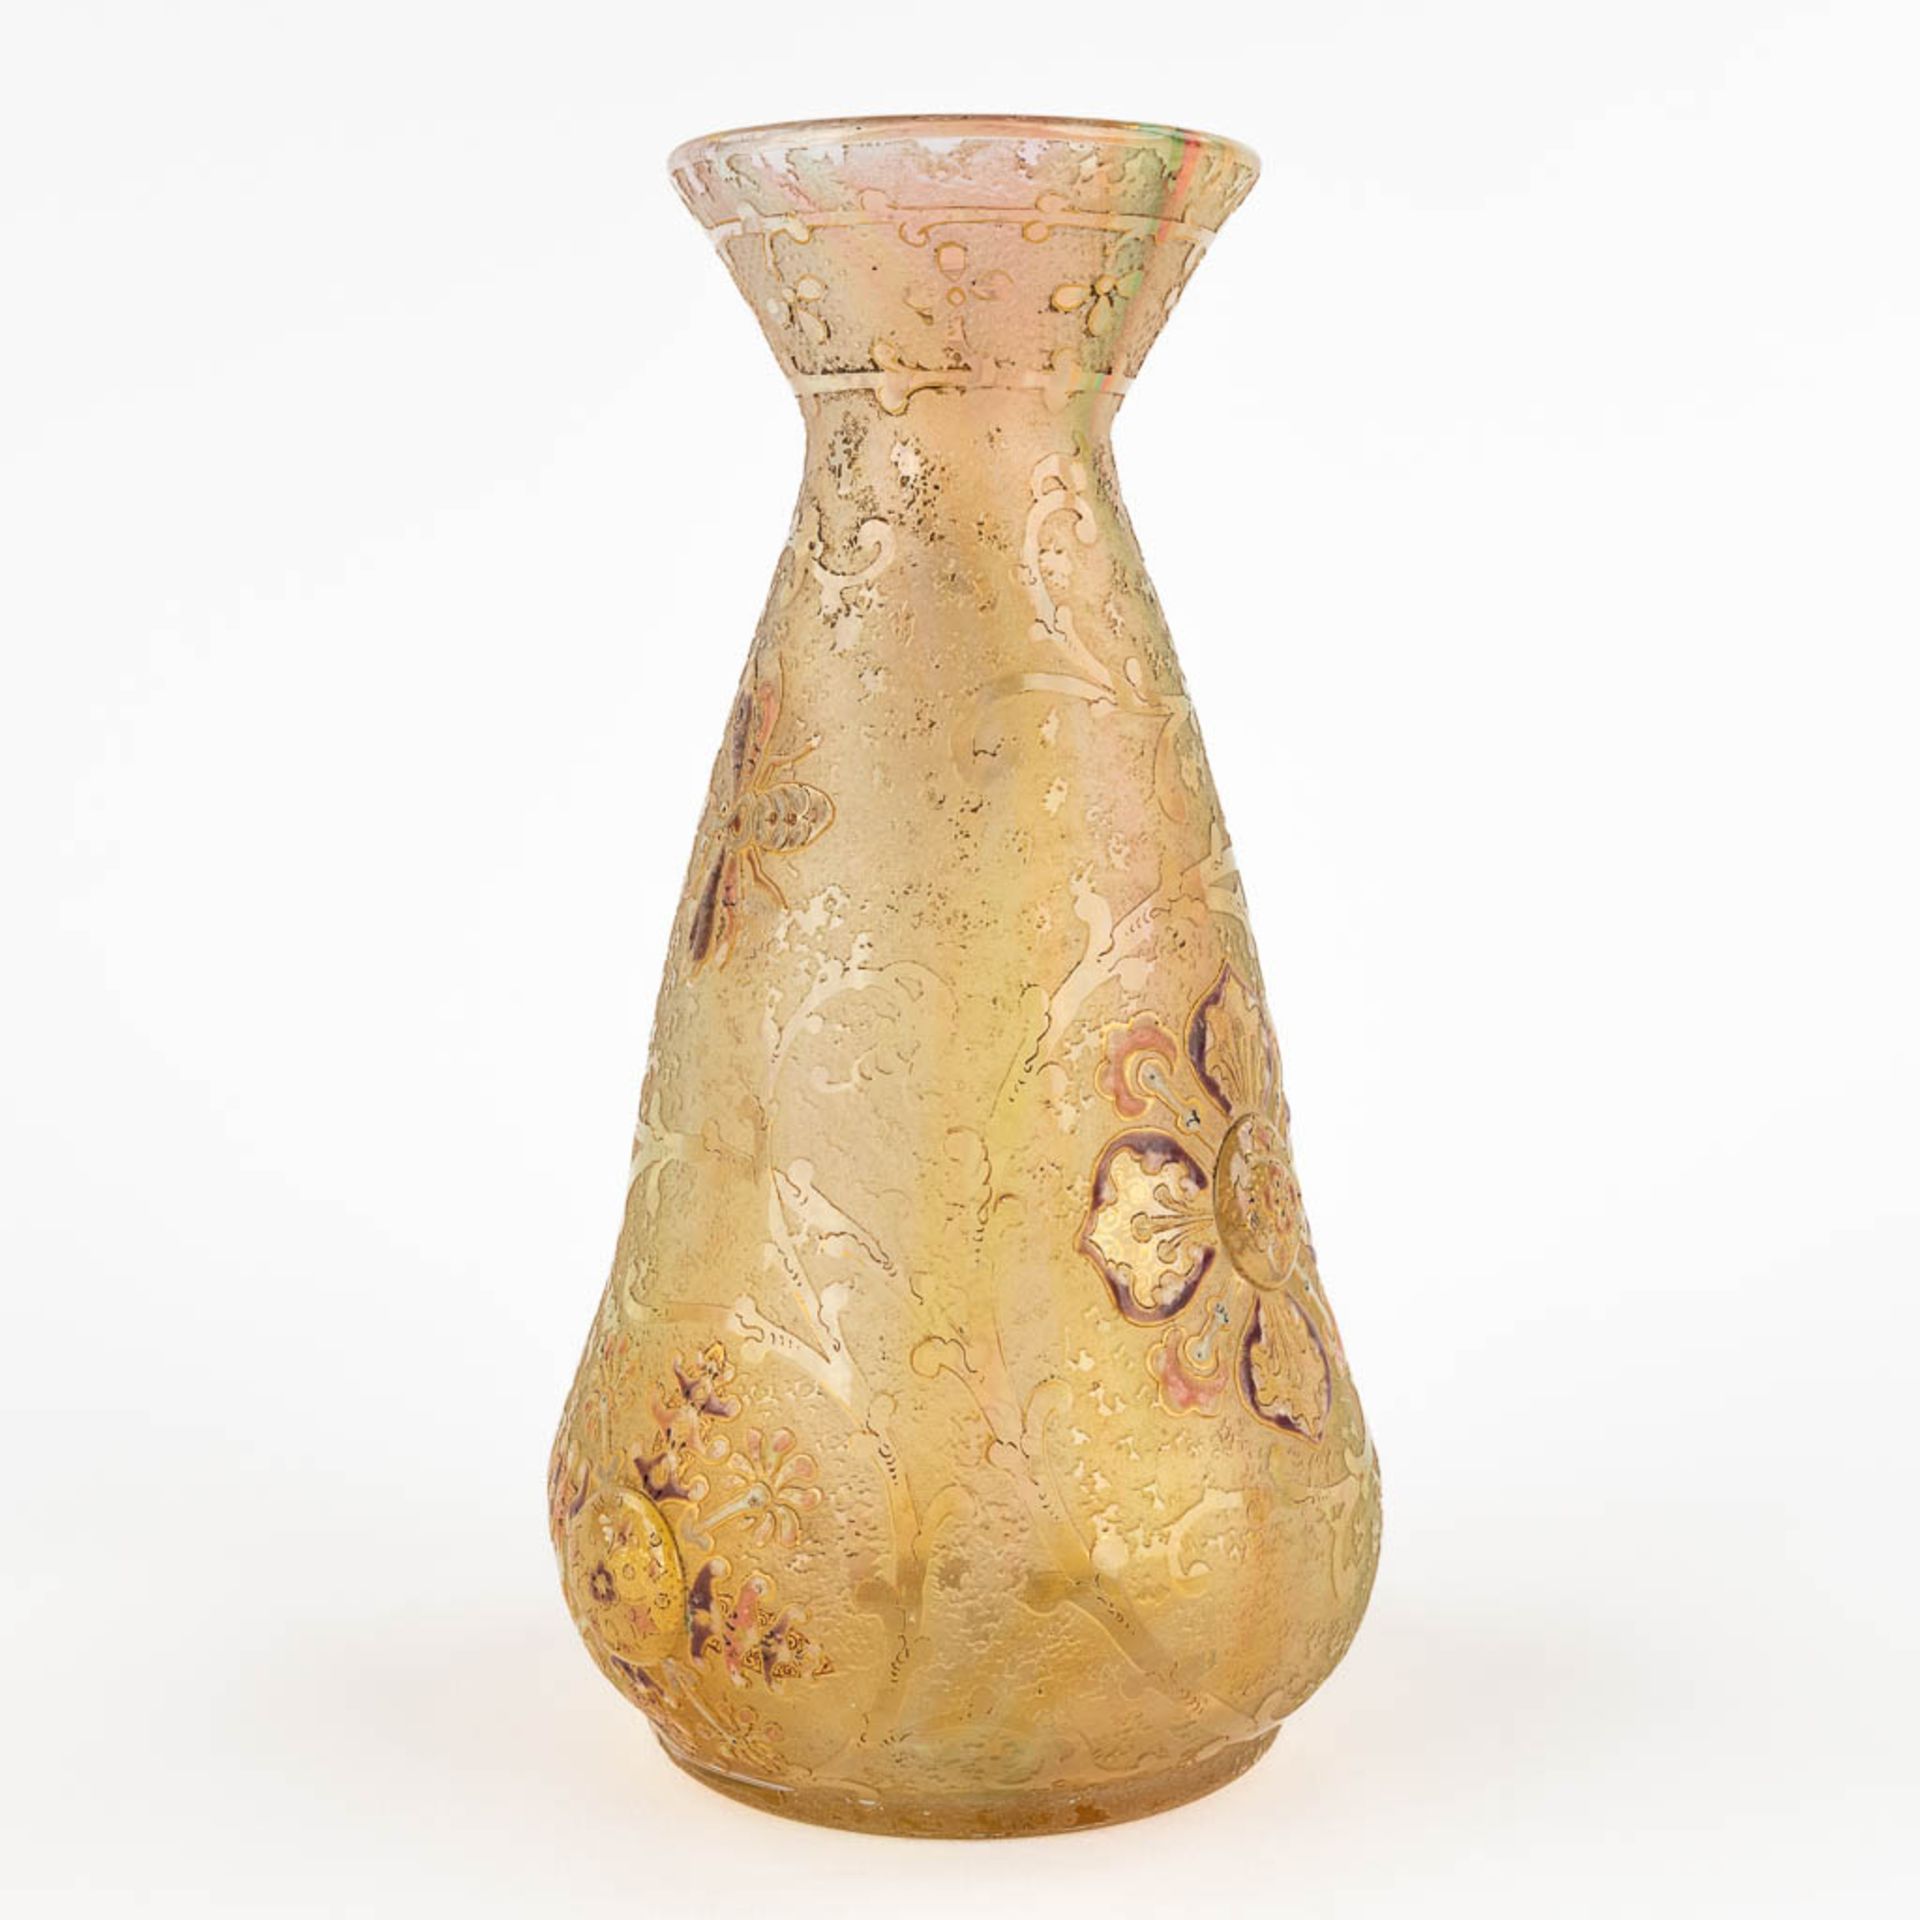 Antonin DAUM (1864-1930) 'Fleurons et rinceaux', a glass vase, Daum-Nancy, circa 1892-1893. (H:20 x  - Bild 3 aus 15